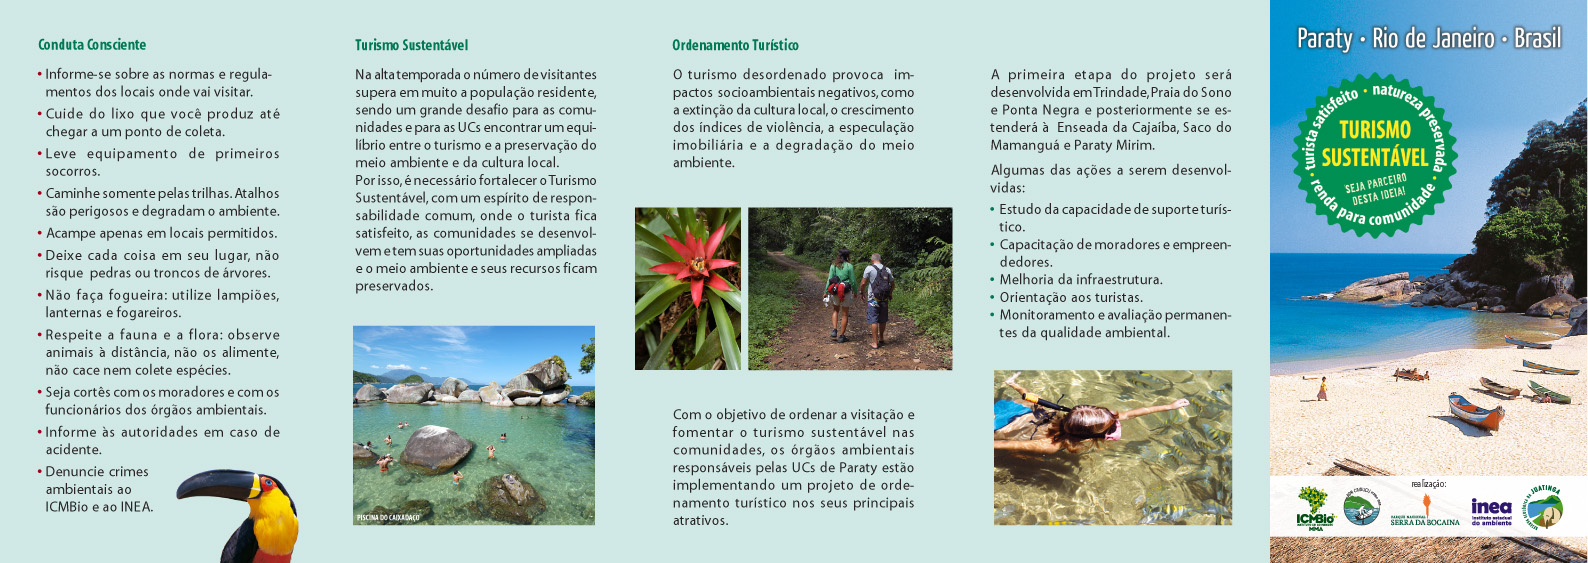 O que é o turismo sustentável no Brasil e por que ele é importante